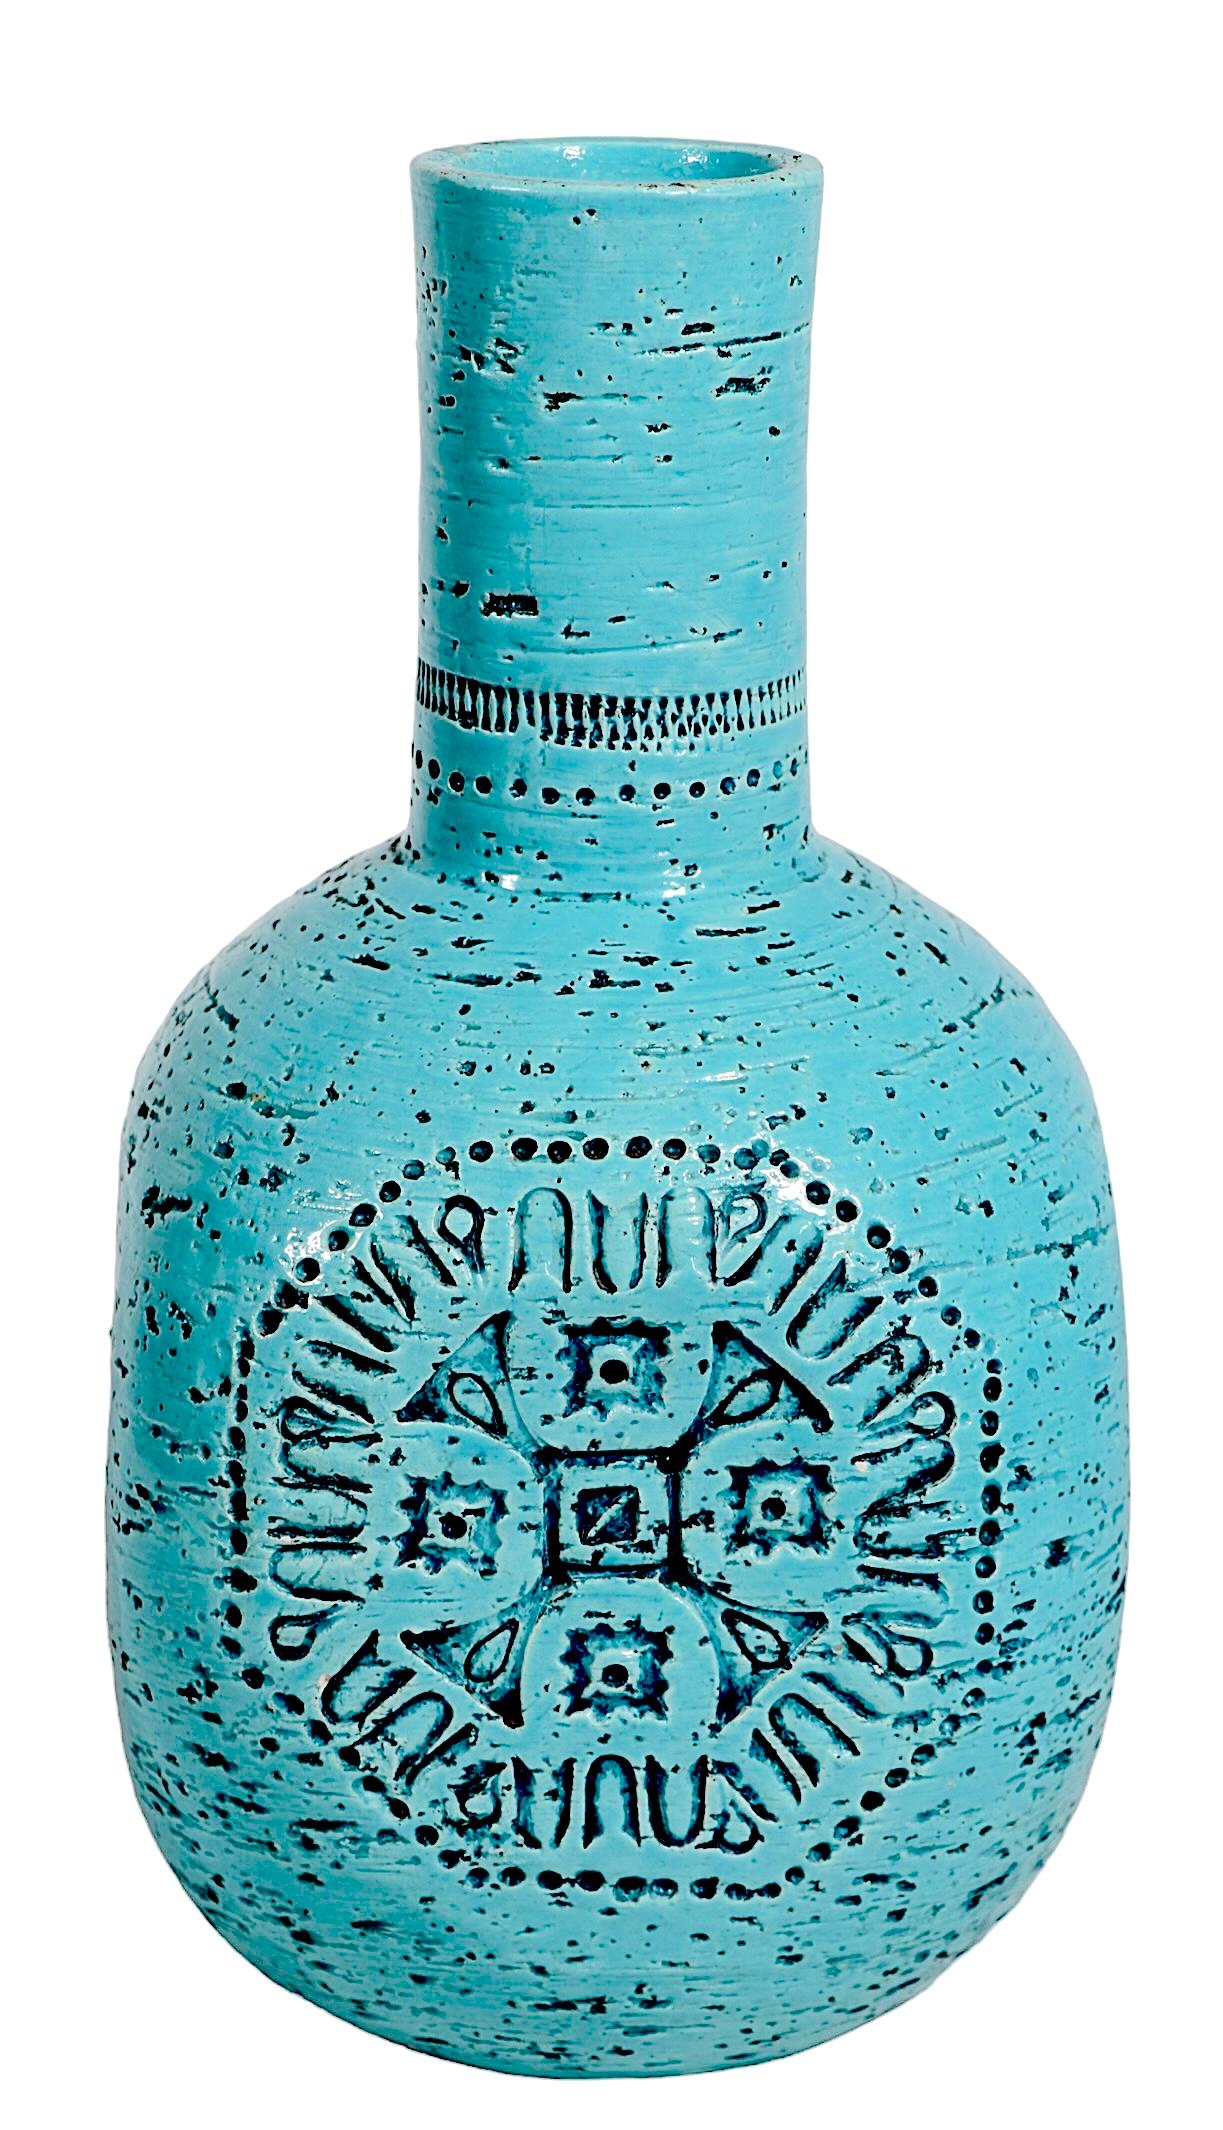 Außergewöhnliche und Raymor Keramik Vase mit einer ungewöhnlichen  Glasur in mediterranem Blau mit eingeschnittenen Verzierungen auf jeder Oberfläche. Mitte des Jahrhunderts, Made in Italy, rückseitig vollständig und korrekt gekennzeichnet, wie